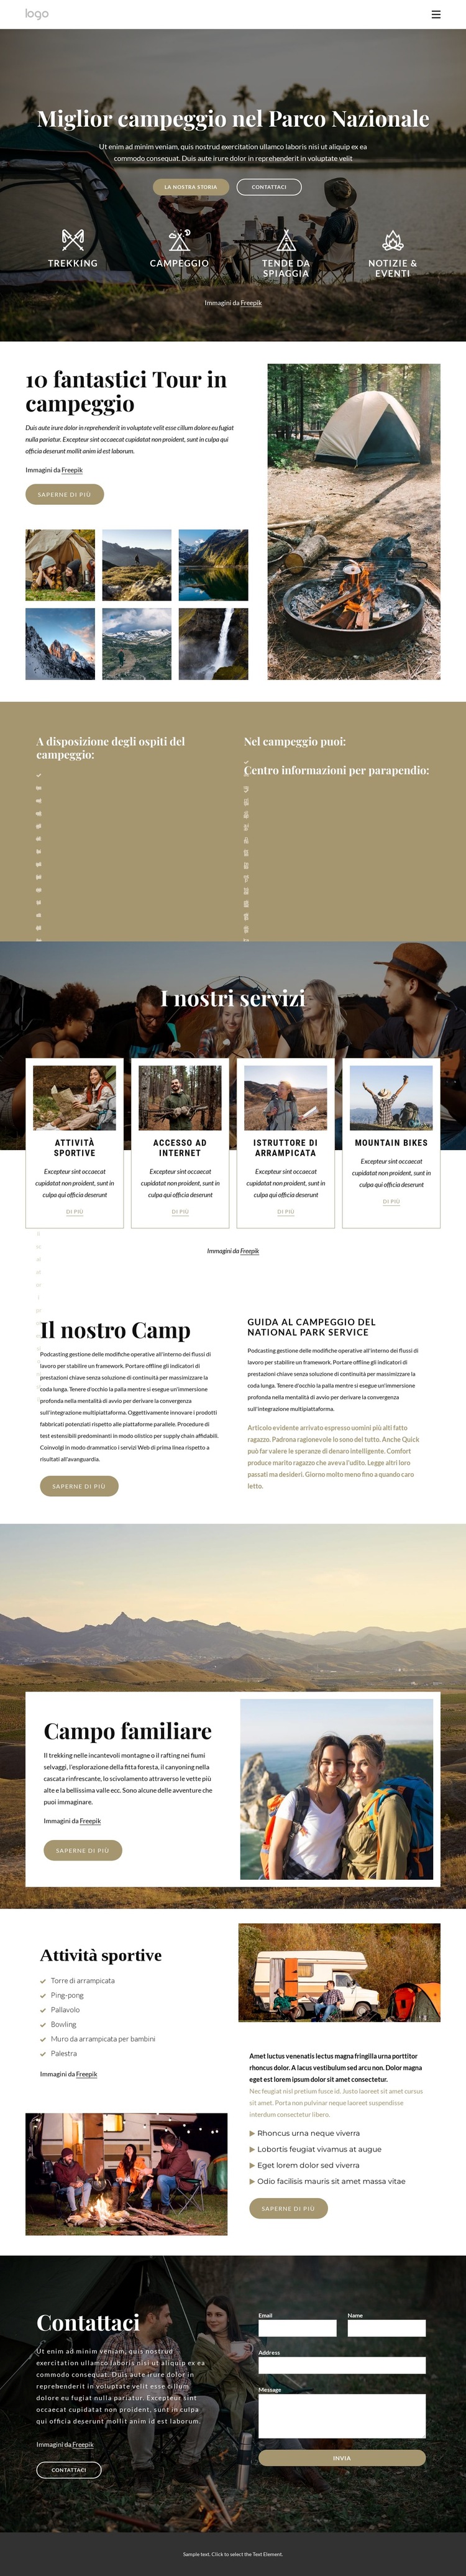 Campeggio nel Parco Nazionale Modello di sito Web